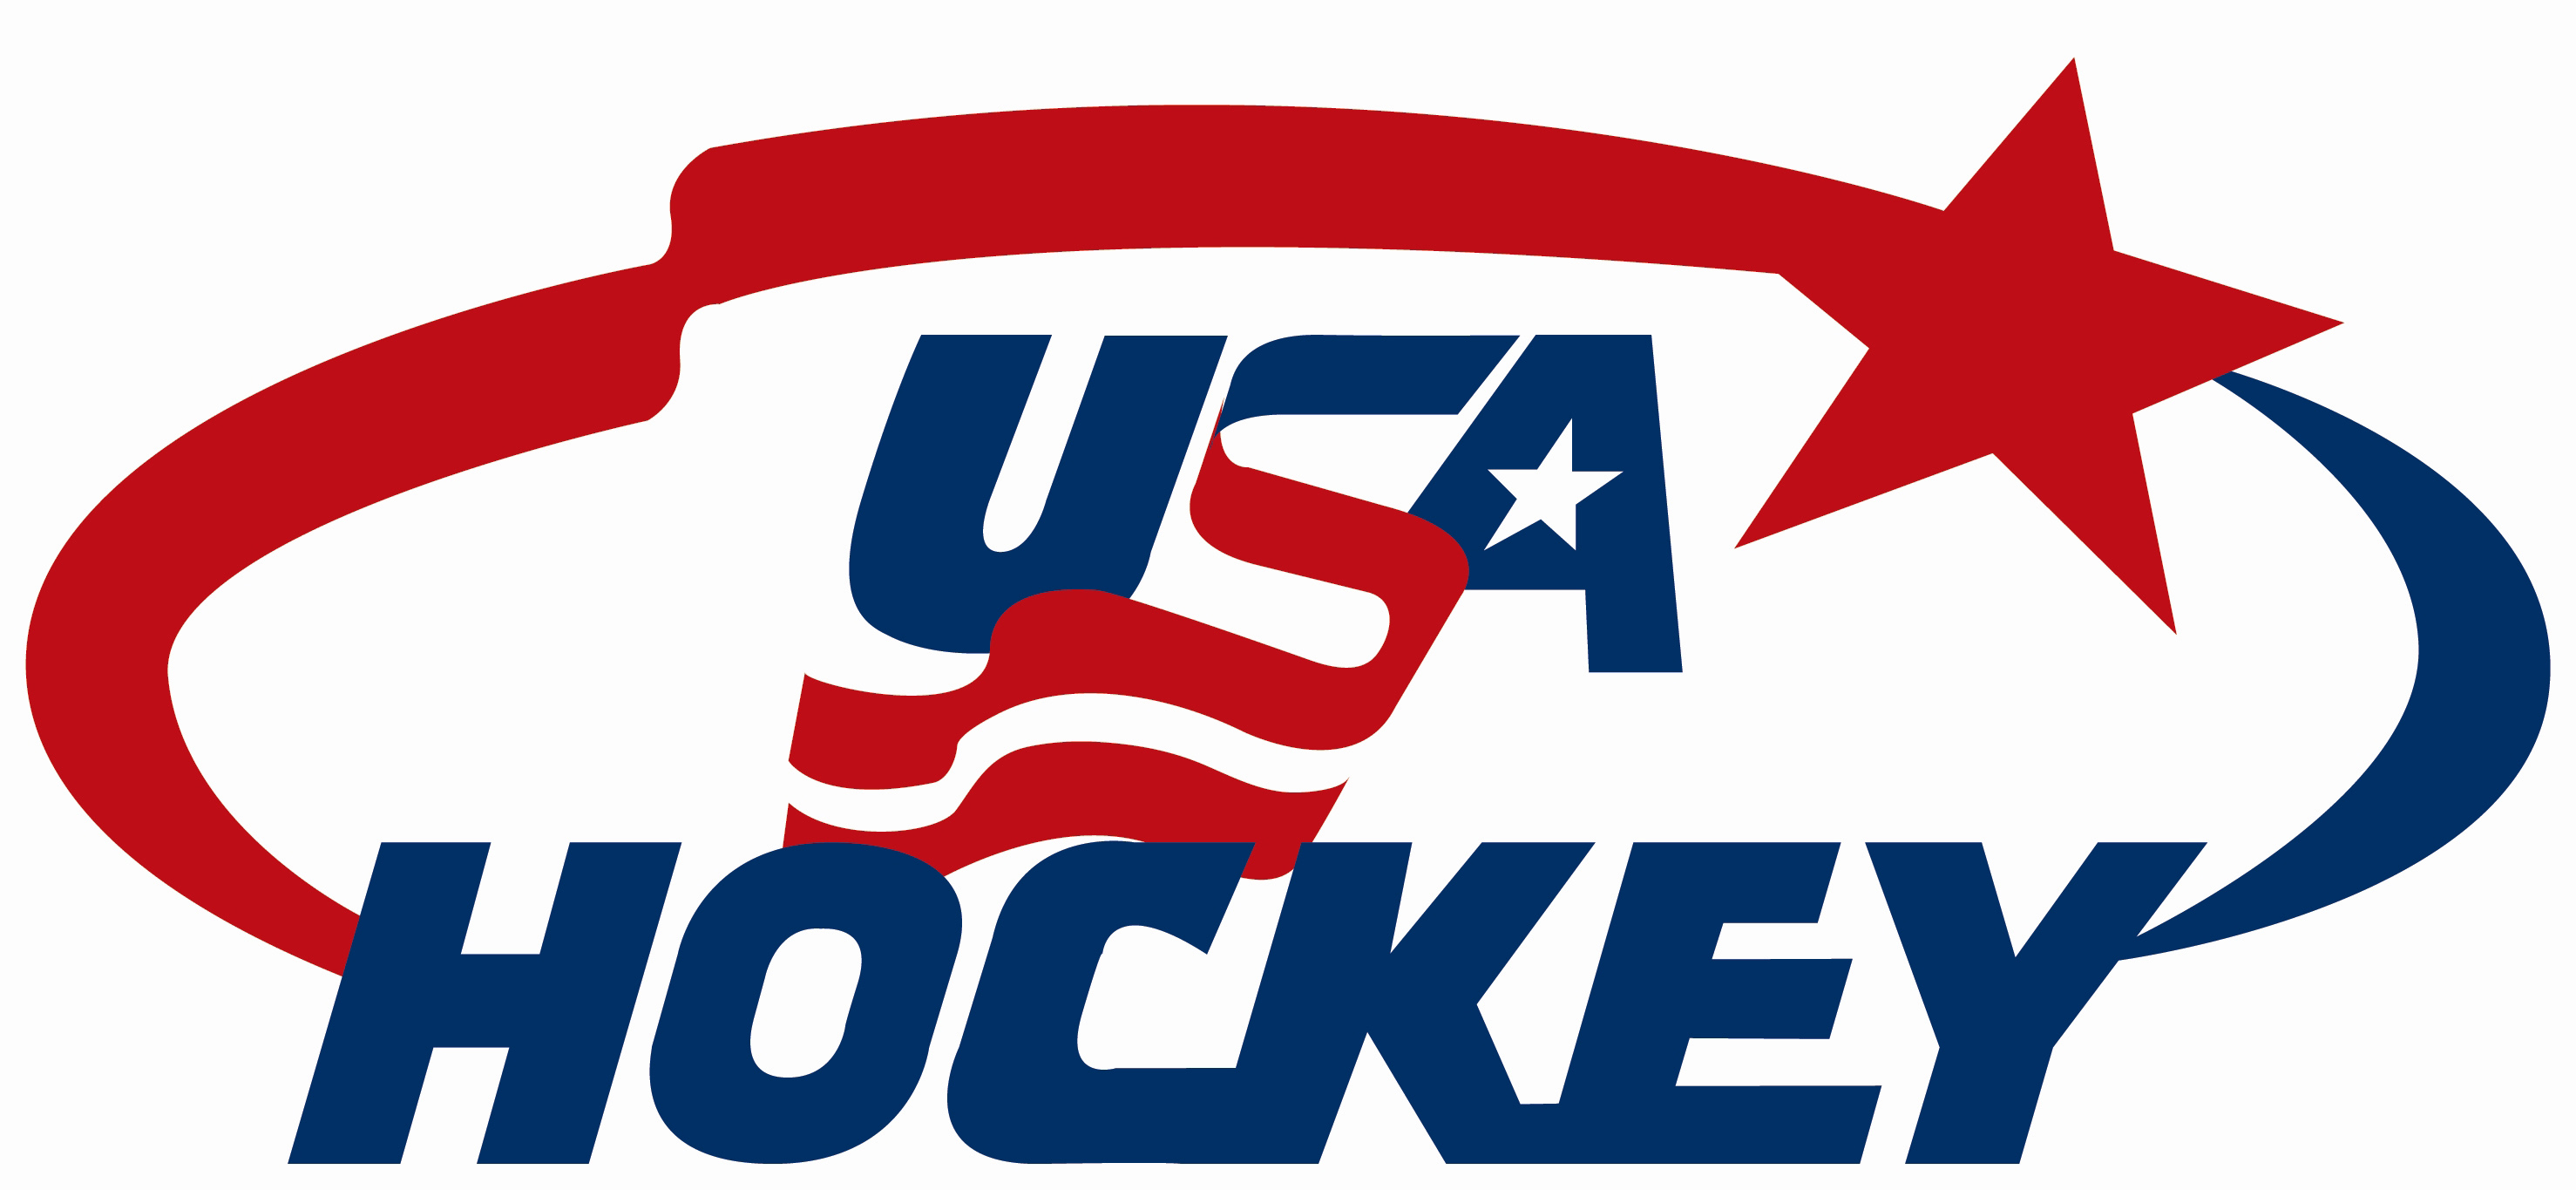 USA-hockey